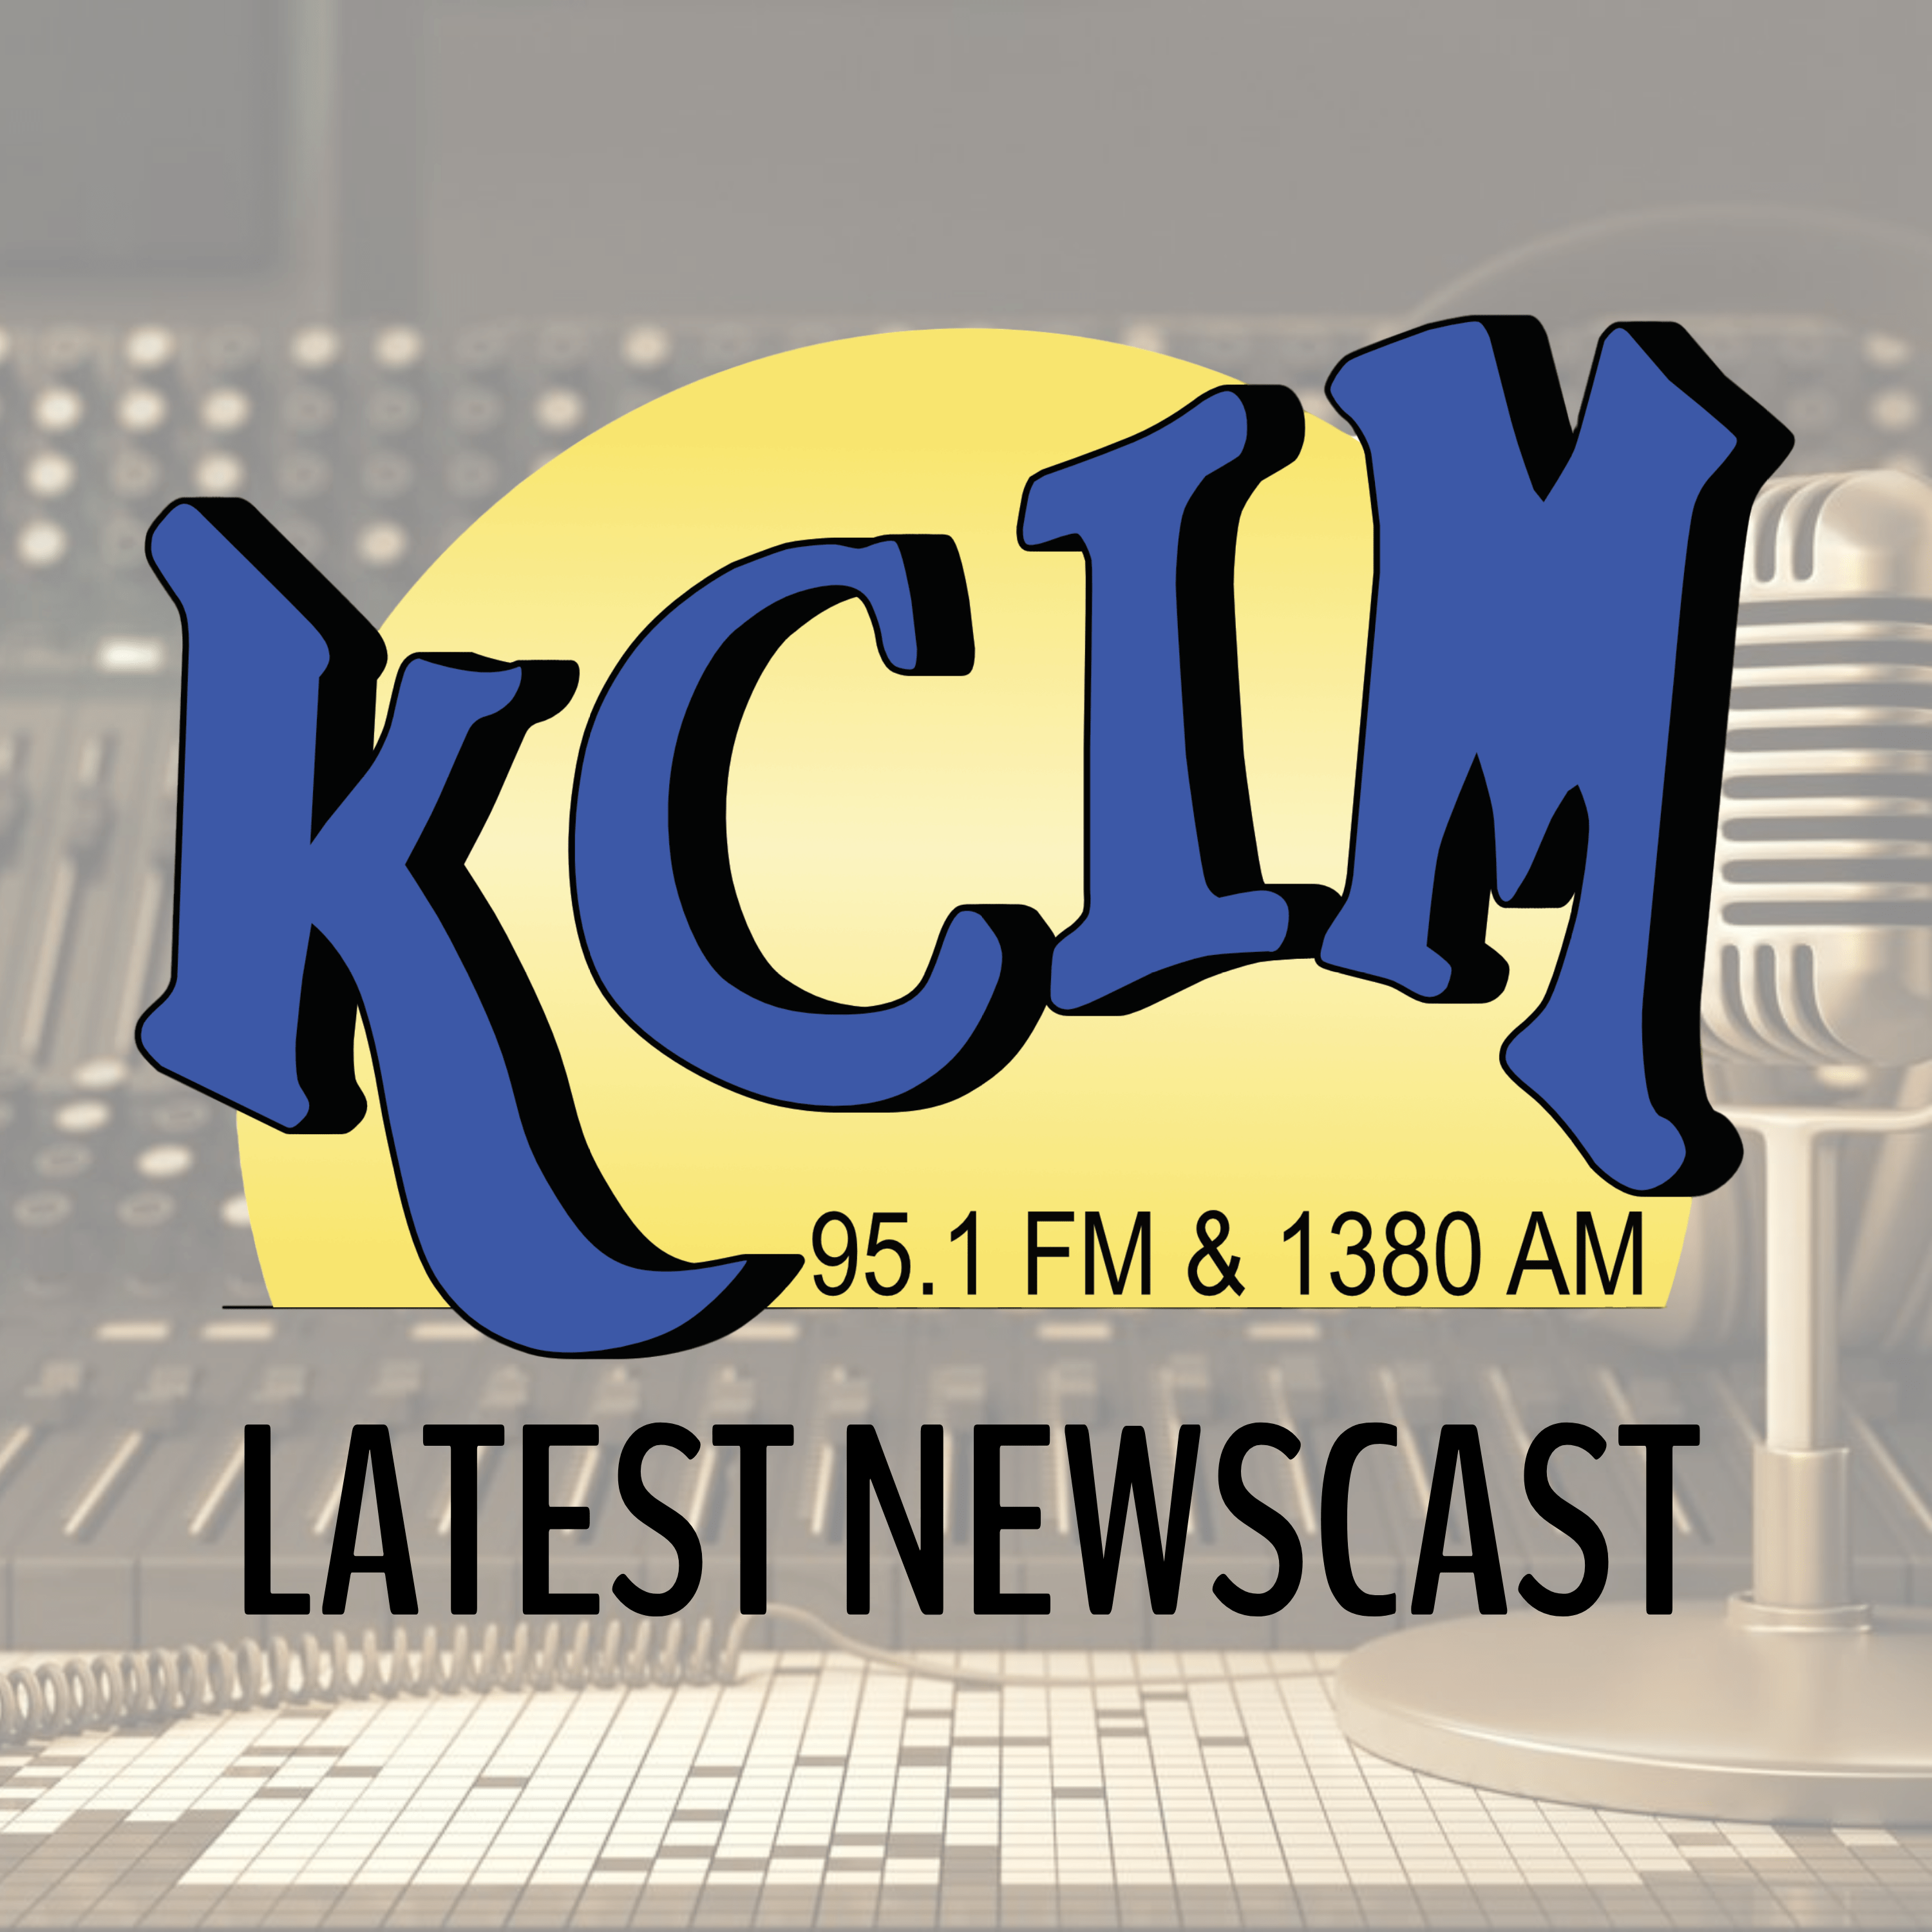 KCIM Newscast